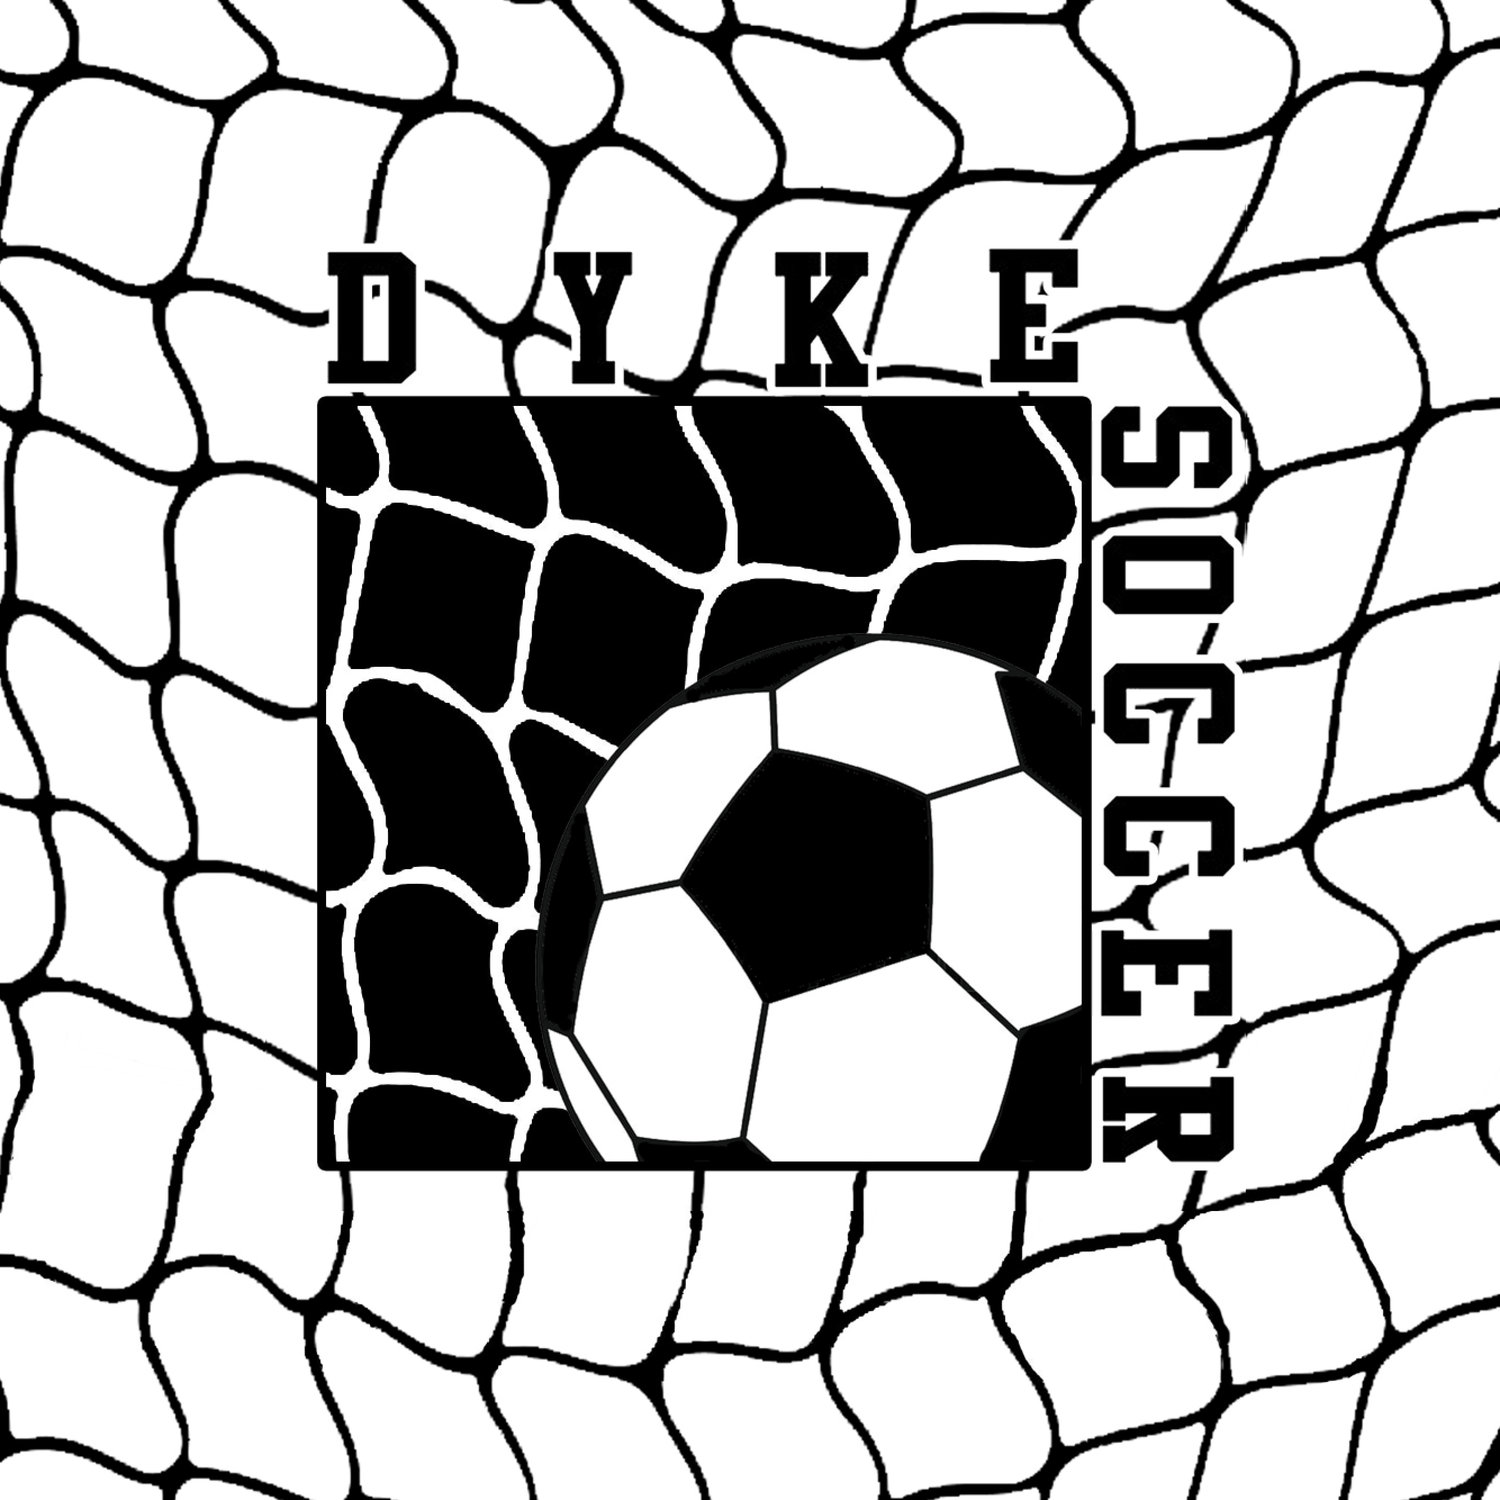 staff-dyke-soccer